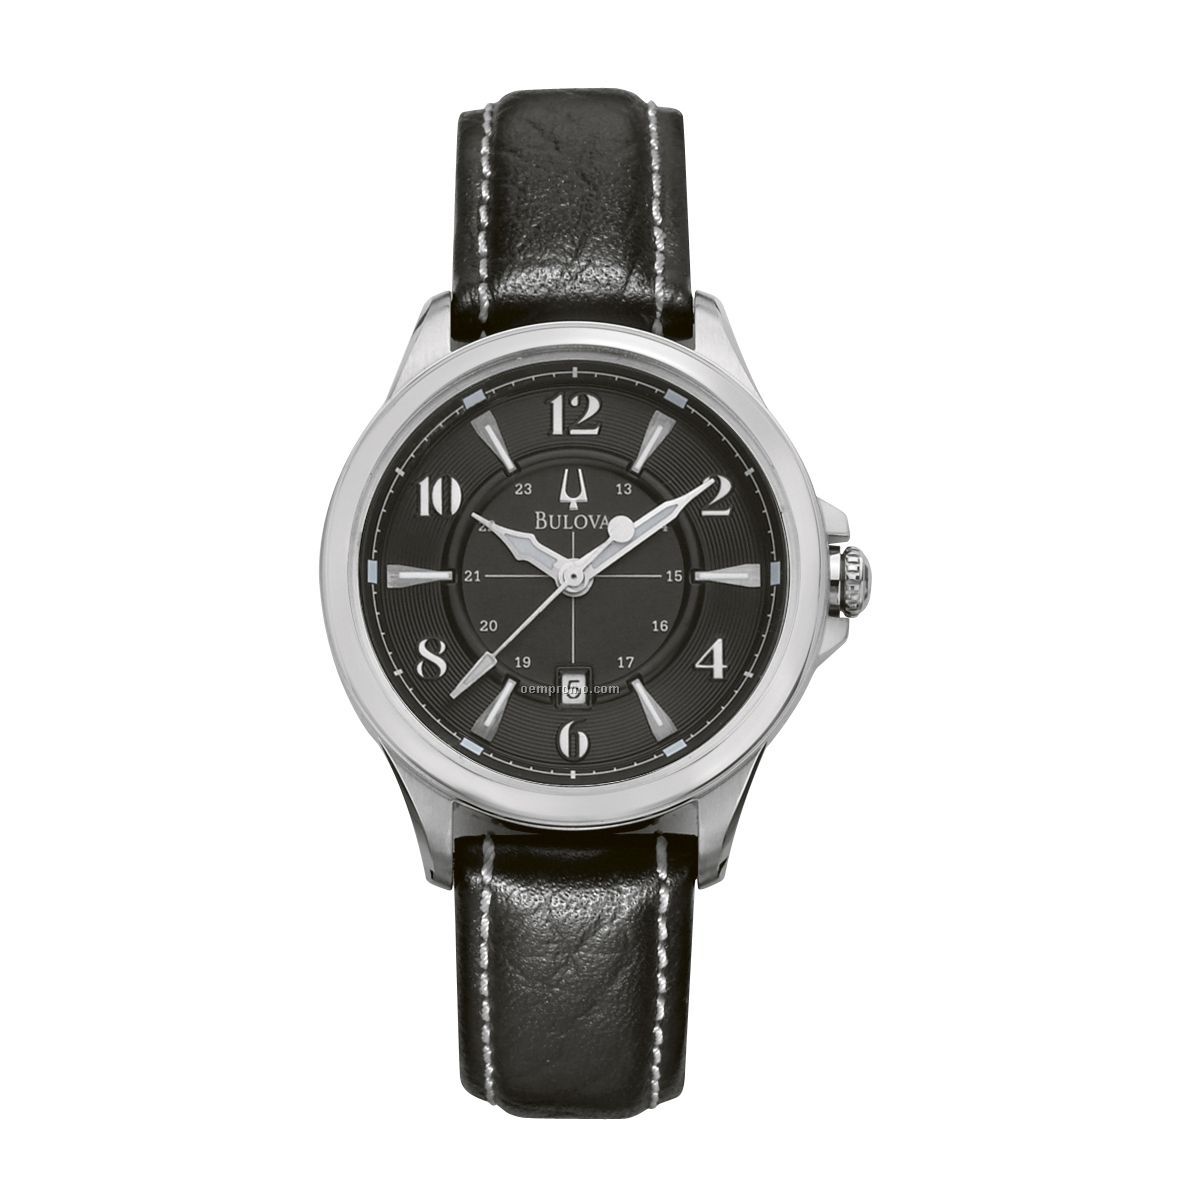  Analog Wrist Watch,China Wholesale Bulova Ladies39; Analog Wrist Watch